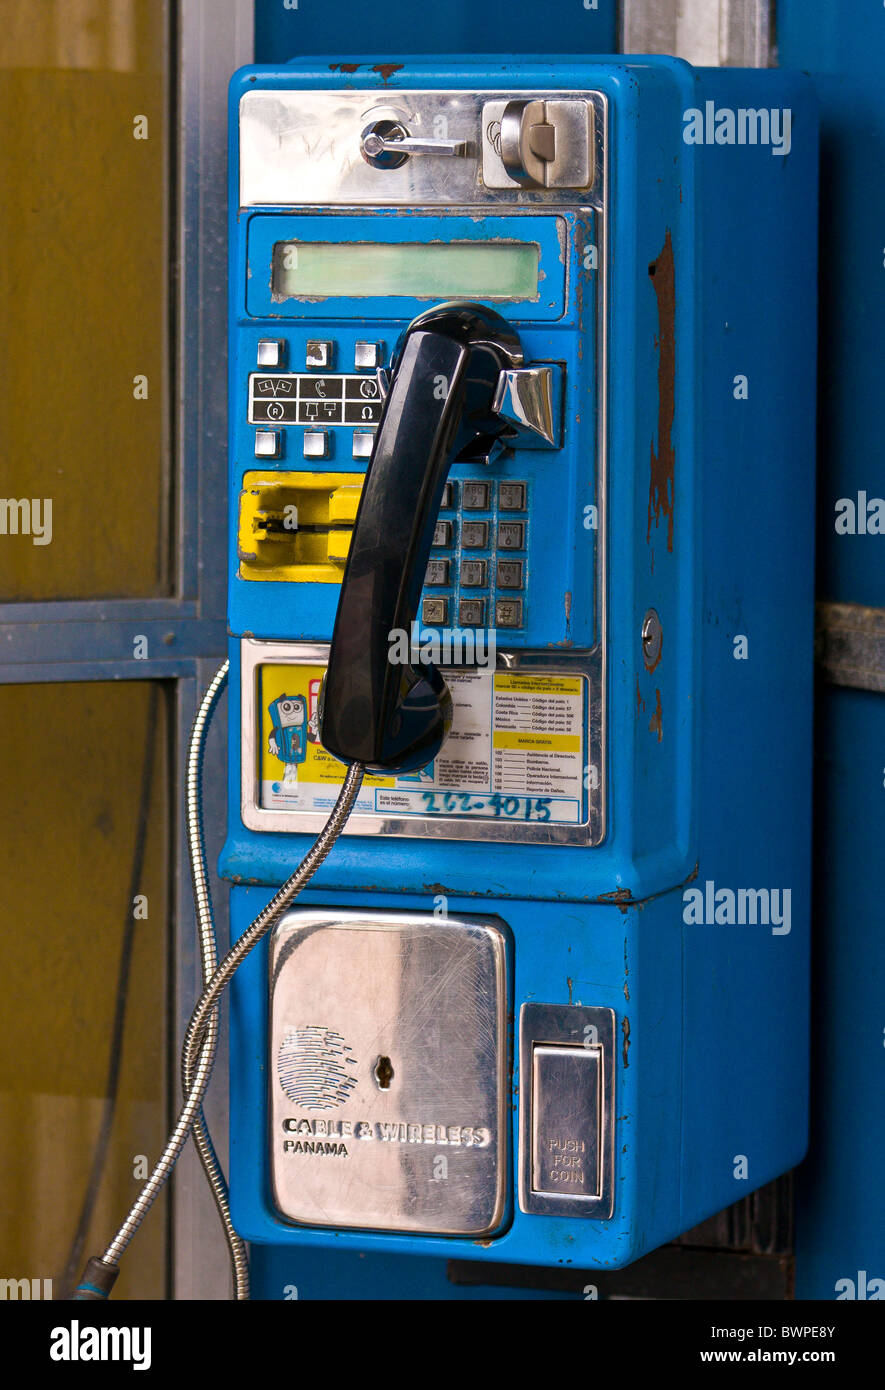 PANAMA-Stadt, PANAMA - Telefonzelle in Telefonzelle, Casco Viejo, historischen Zentrum der Stadt. Stockfoto